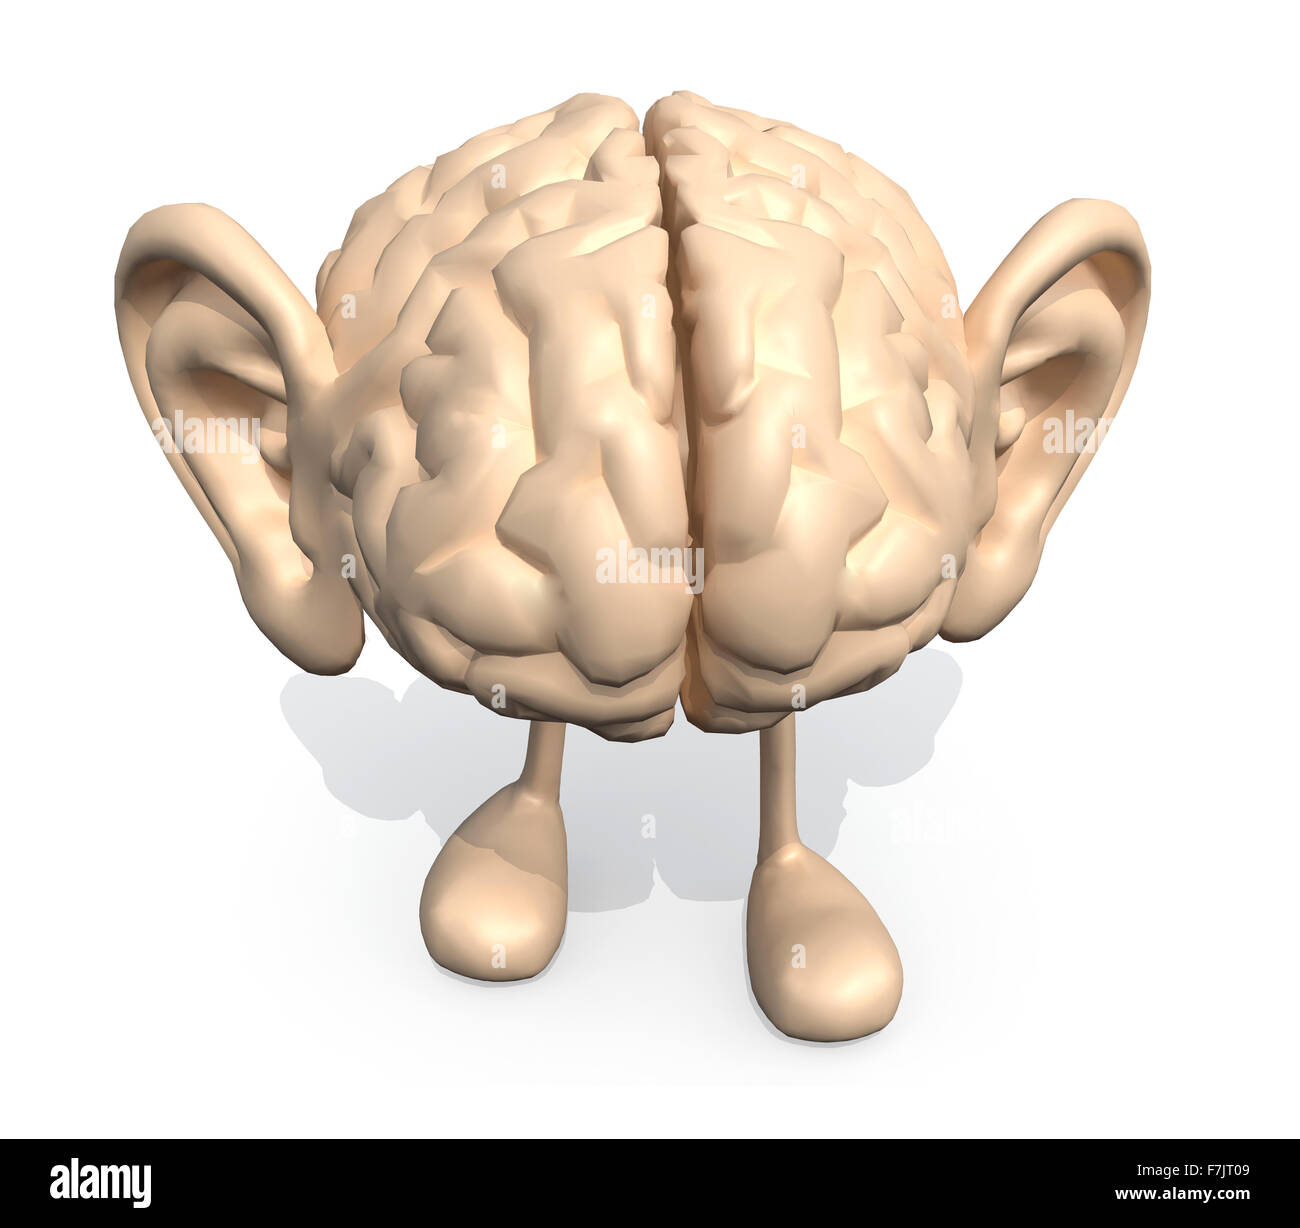 Cervello umano con le orecchie grandi e gambe, 3d illustrazione Foto Stock